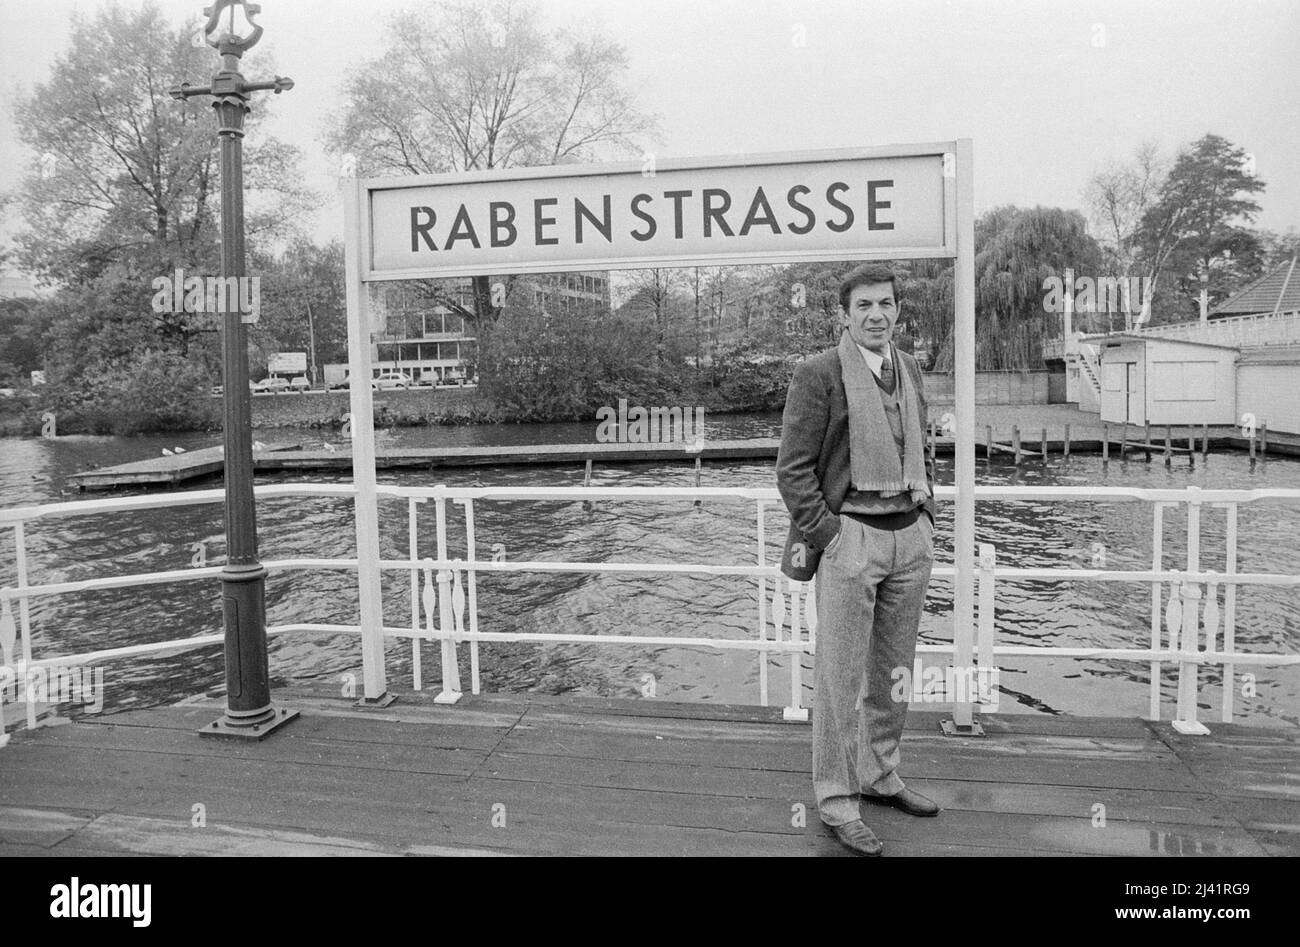 Leonard Nimoy, bekannt als 'Mr. Spock' aus der SciFi-Fernsehserie 'Raumschiff Enterprise', bei einem Besuch in Hamburg an der Alten Rabenstrasse, Deutschland um 1989. Stock Photo